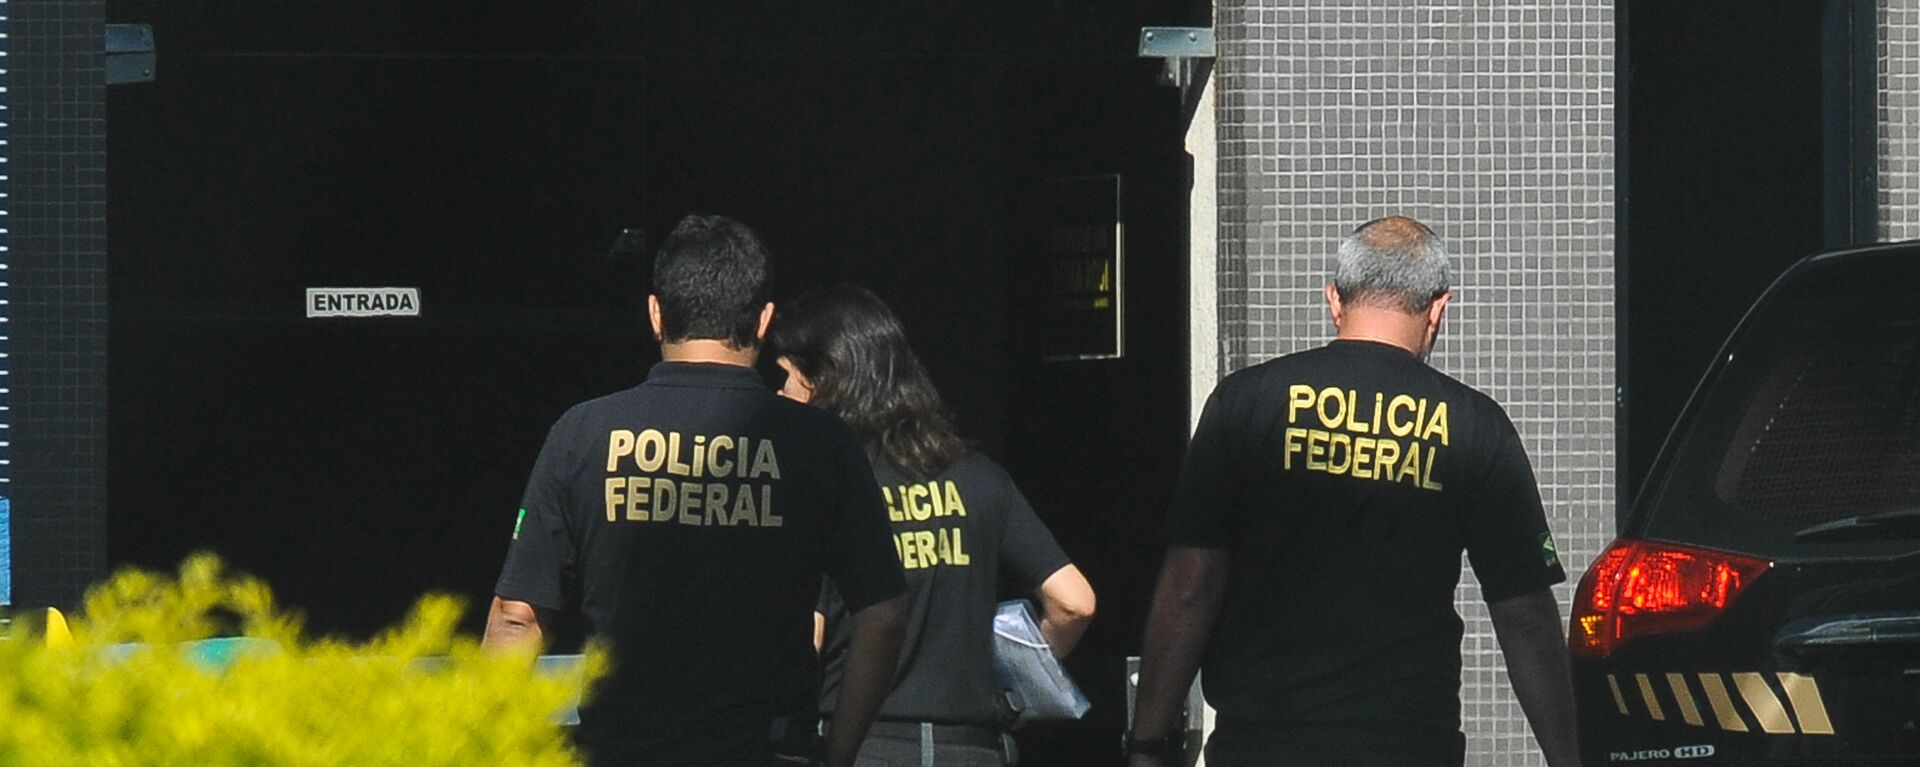 Agentes da Polícia Federal do Brasil - Sputnik Mundo, 1920, 27.01.2023